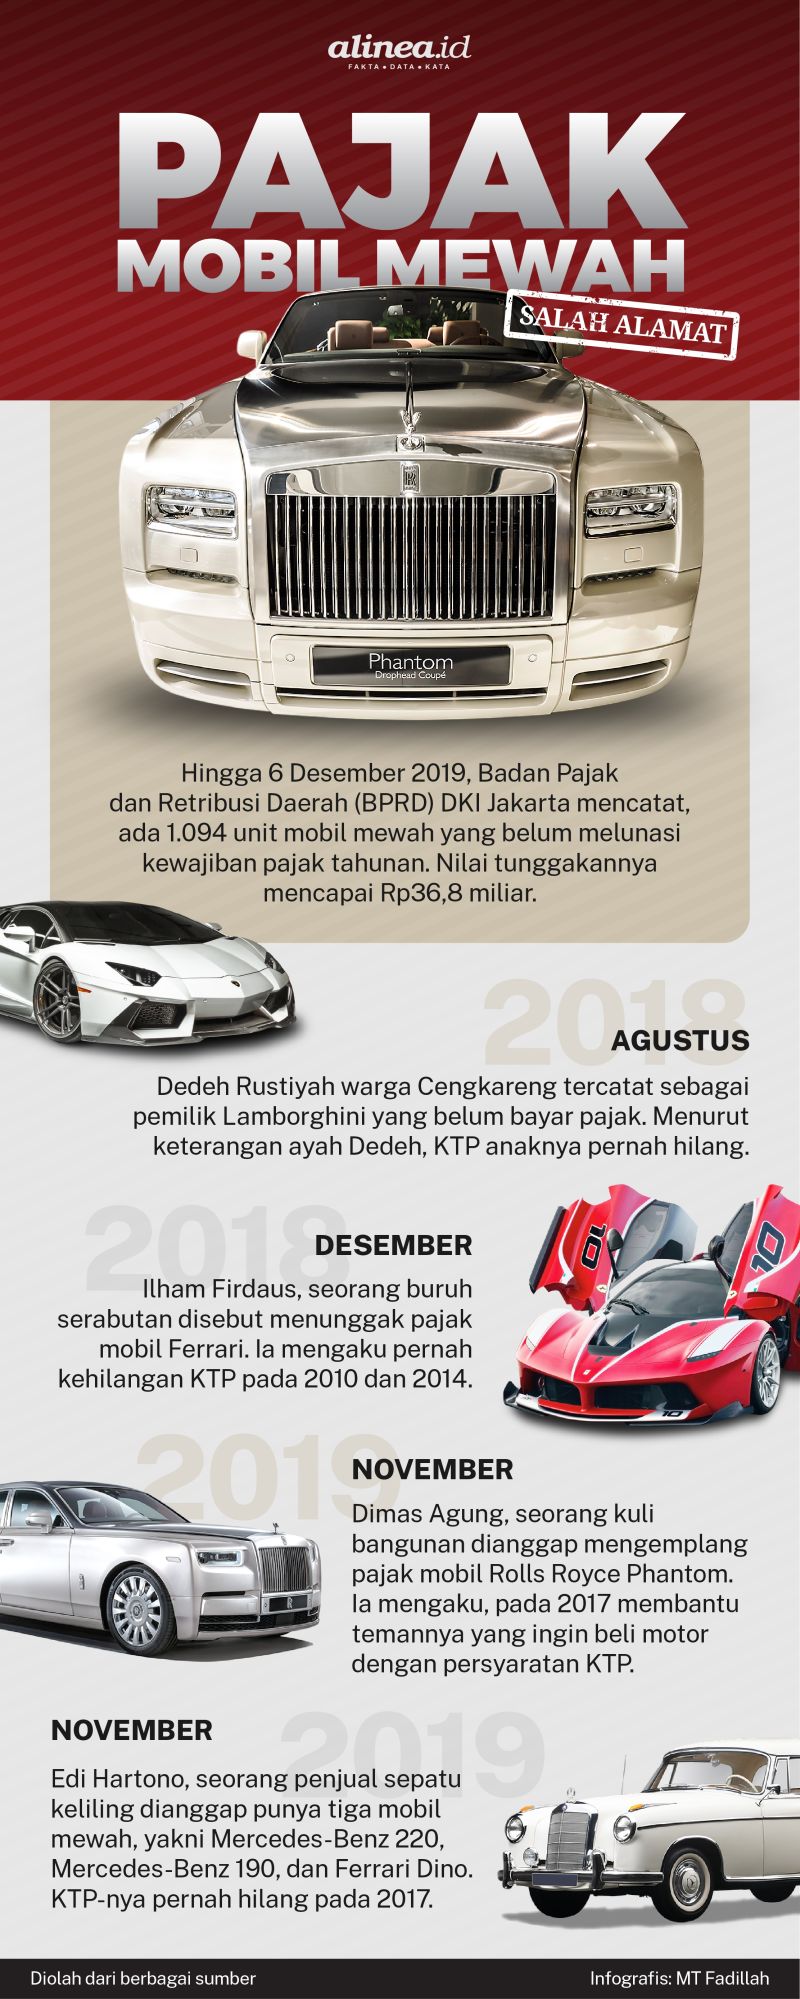 Infografik pajak mobil mewah. Alinea.id/MT Fadillah.